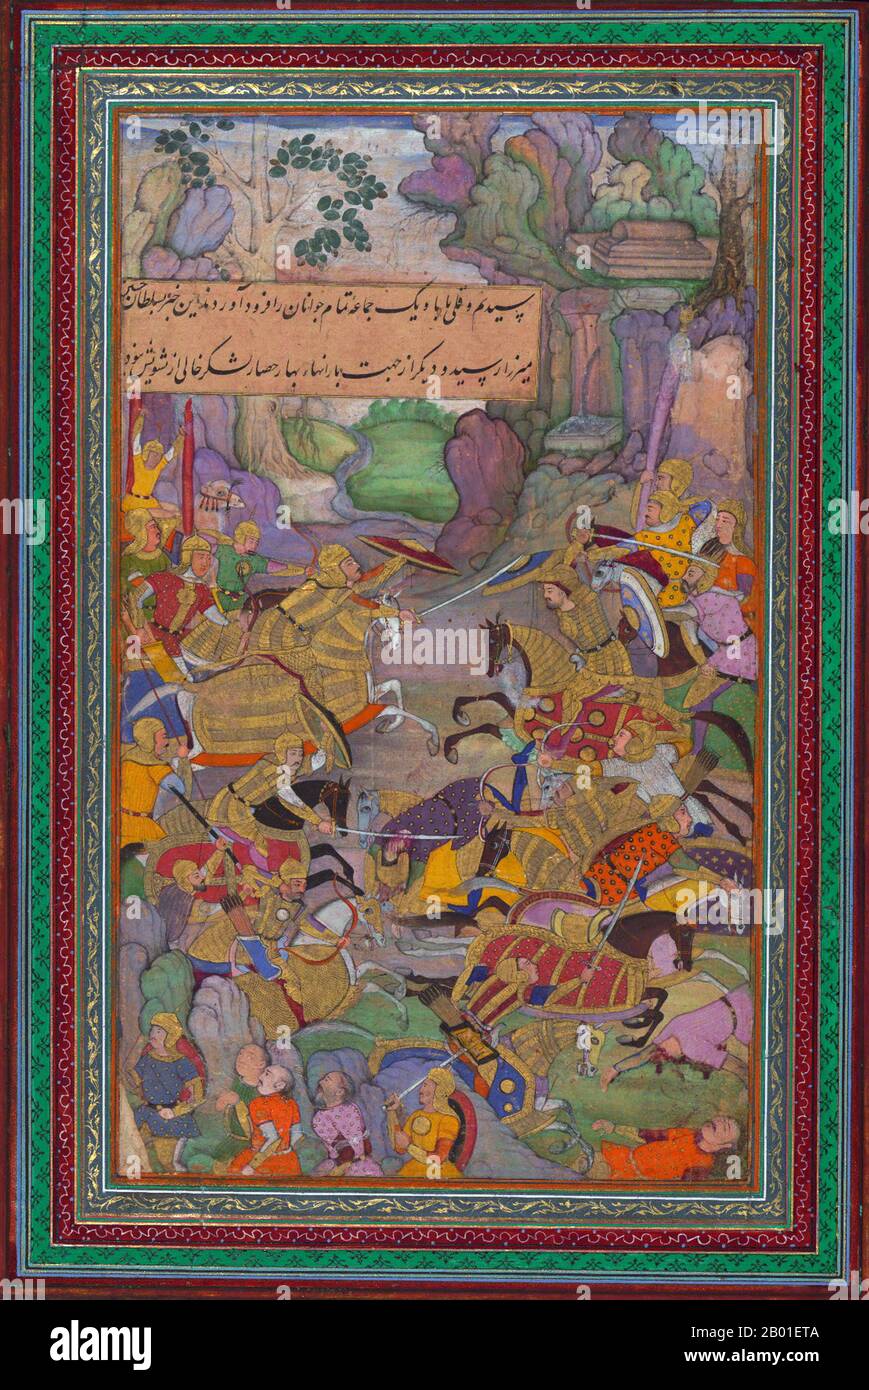 India: Babur sconfigge i suoi nemici. Dipinto in miniatura del Baburnama, fine 16th ° secolo. Bāburnāma (letteralmente: 'Libro di Babur' o 'lettere di Babur'; altrimenti conosciuto come Tuzk-e Babri) è il nome dato alle memorie di Ẓahīr ud-Dīn Muḥammad Bābur (1483-1530), fondatore dell'Impero Mughal e bisnonno di Timur. Si tratta di un'opera autobiografica, originariamente scritta in lingua Chagatai, nota a Babur come 'Turki' (che significa Turkic), la lingua parlata degli Andijan-Timuridi. Foto Stock